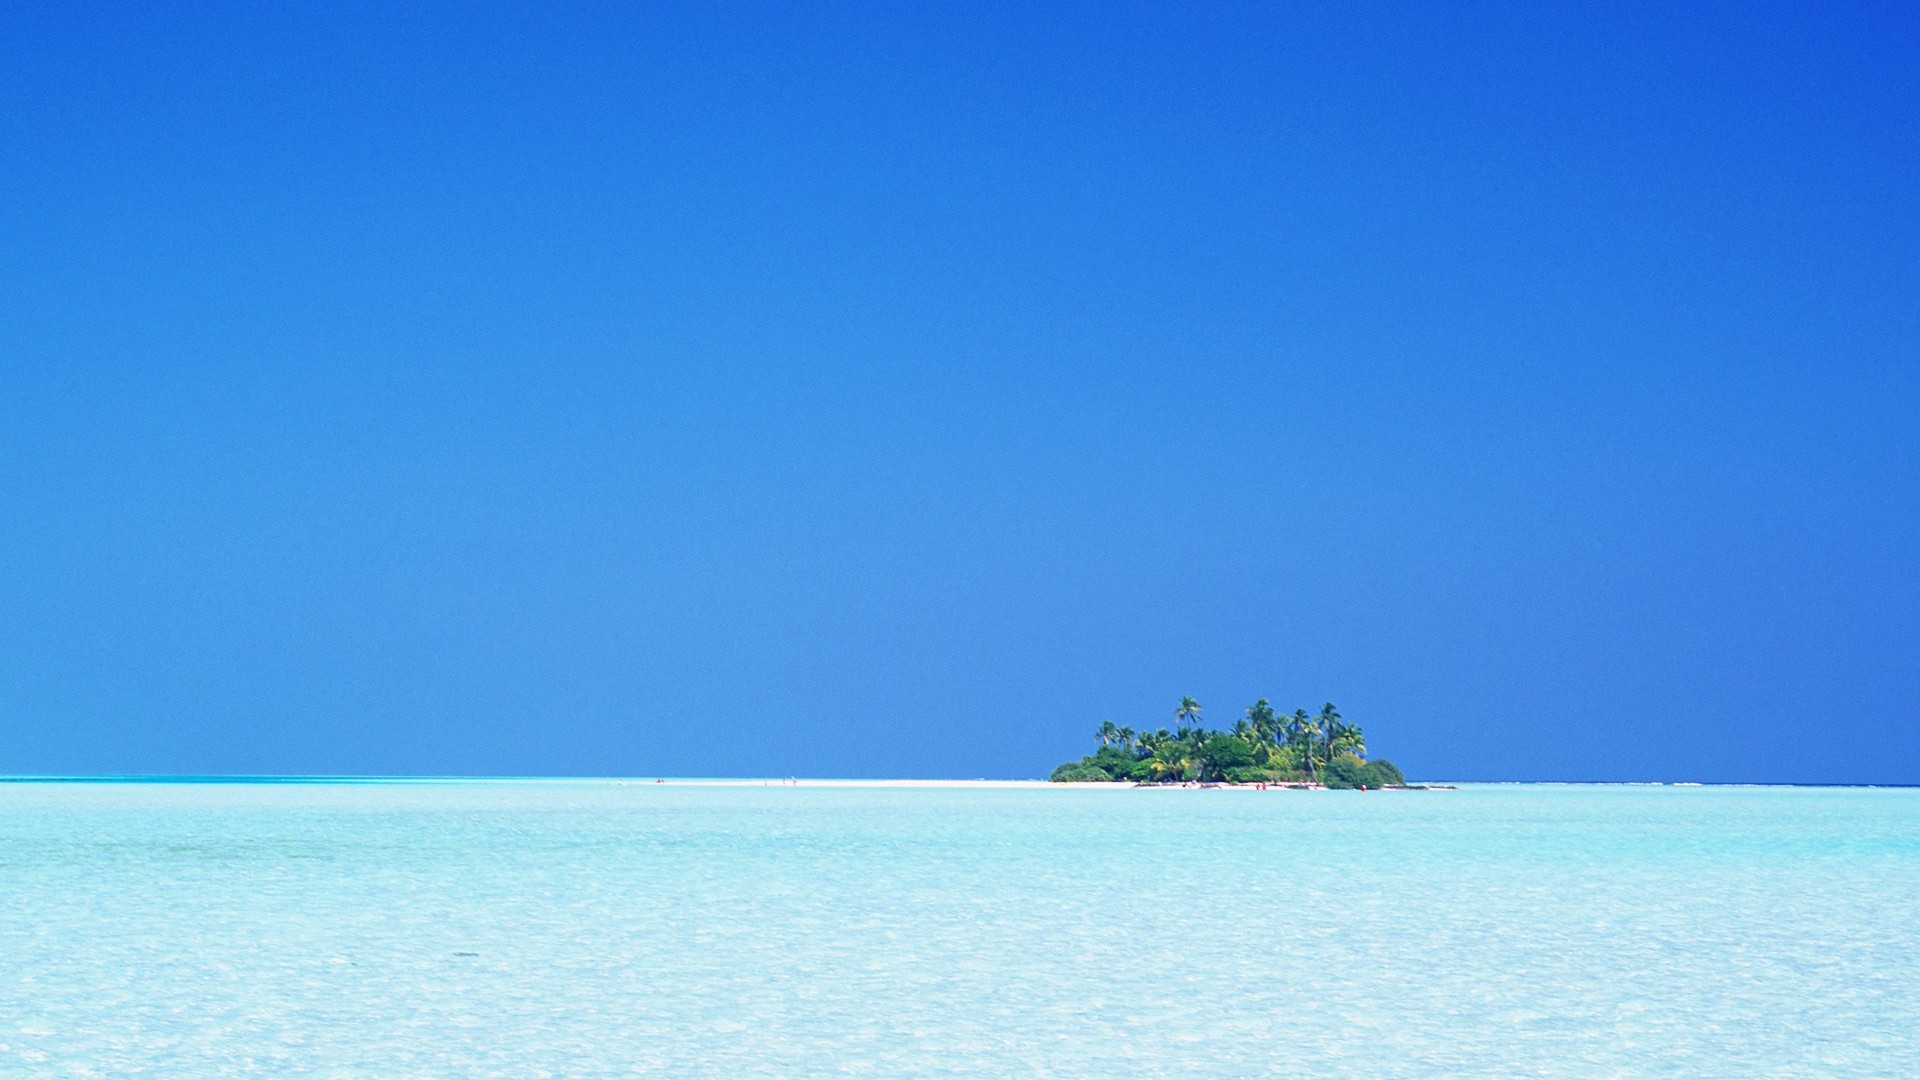 Maledivy vody a modrou oblohu #21 - 1920x1080